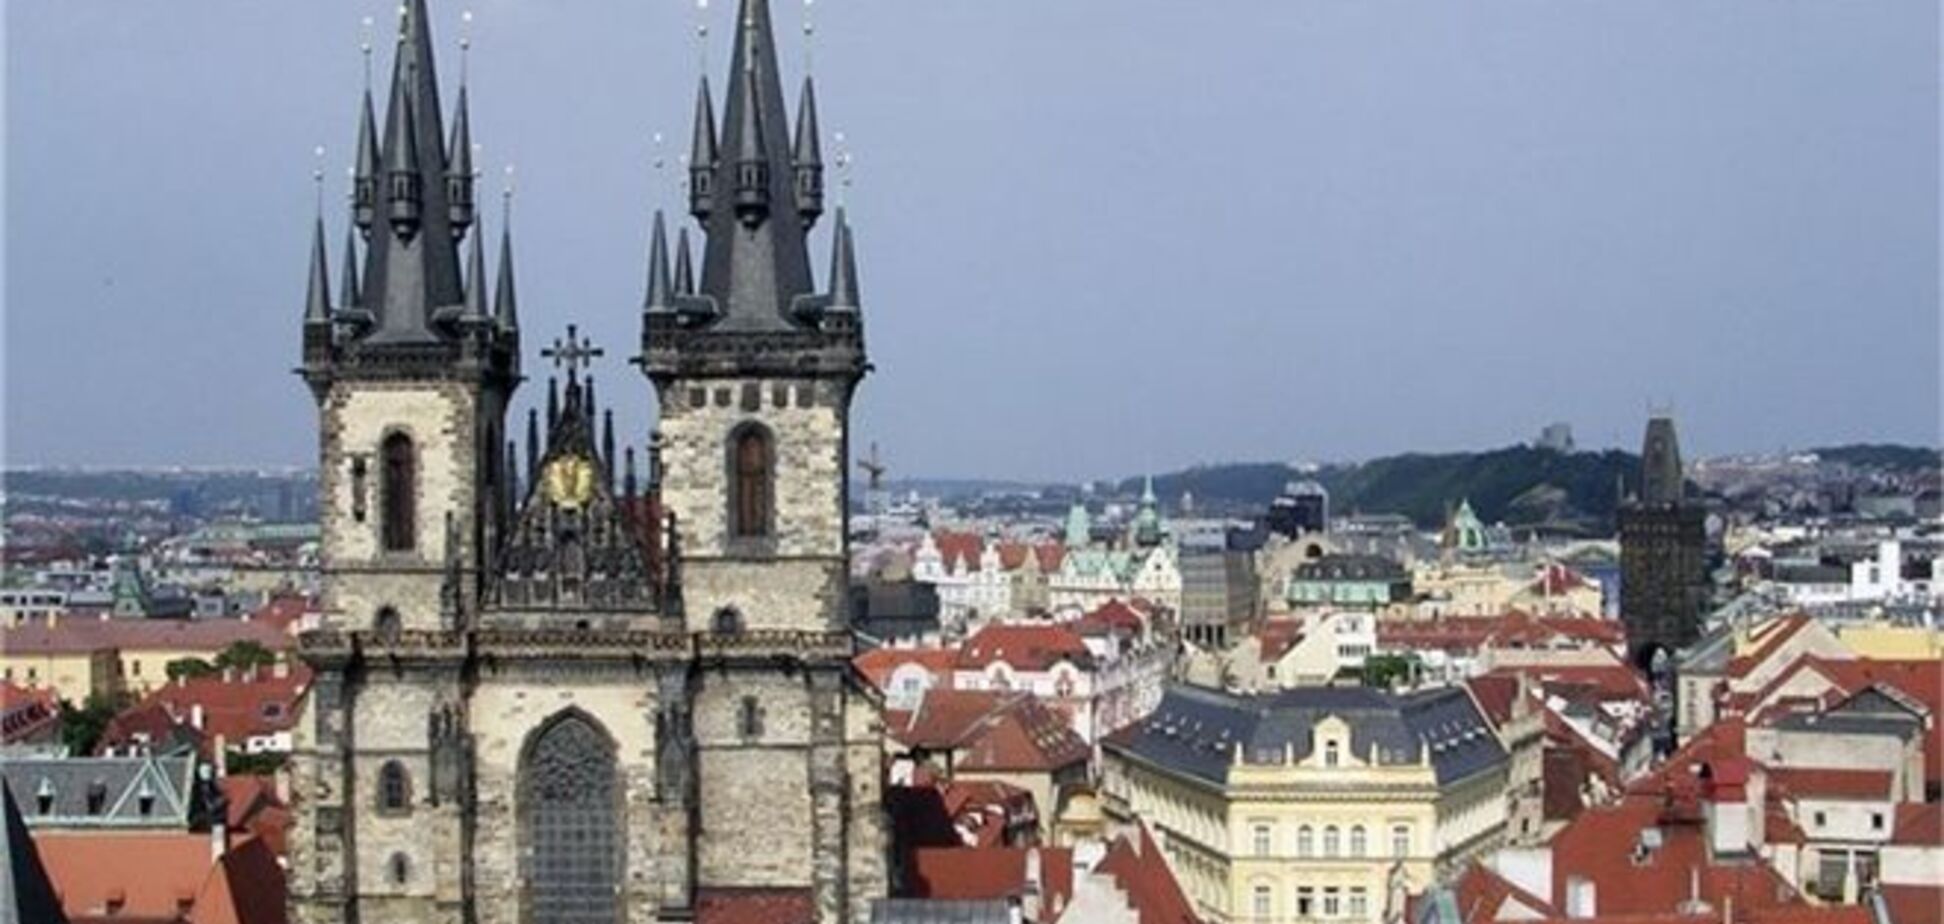 Ипотечные кредиты в Чехии превысили отметку 3% годовых 